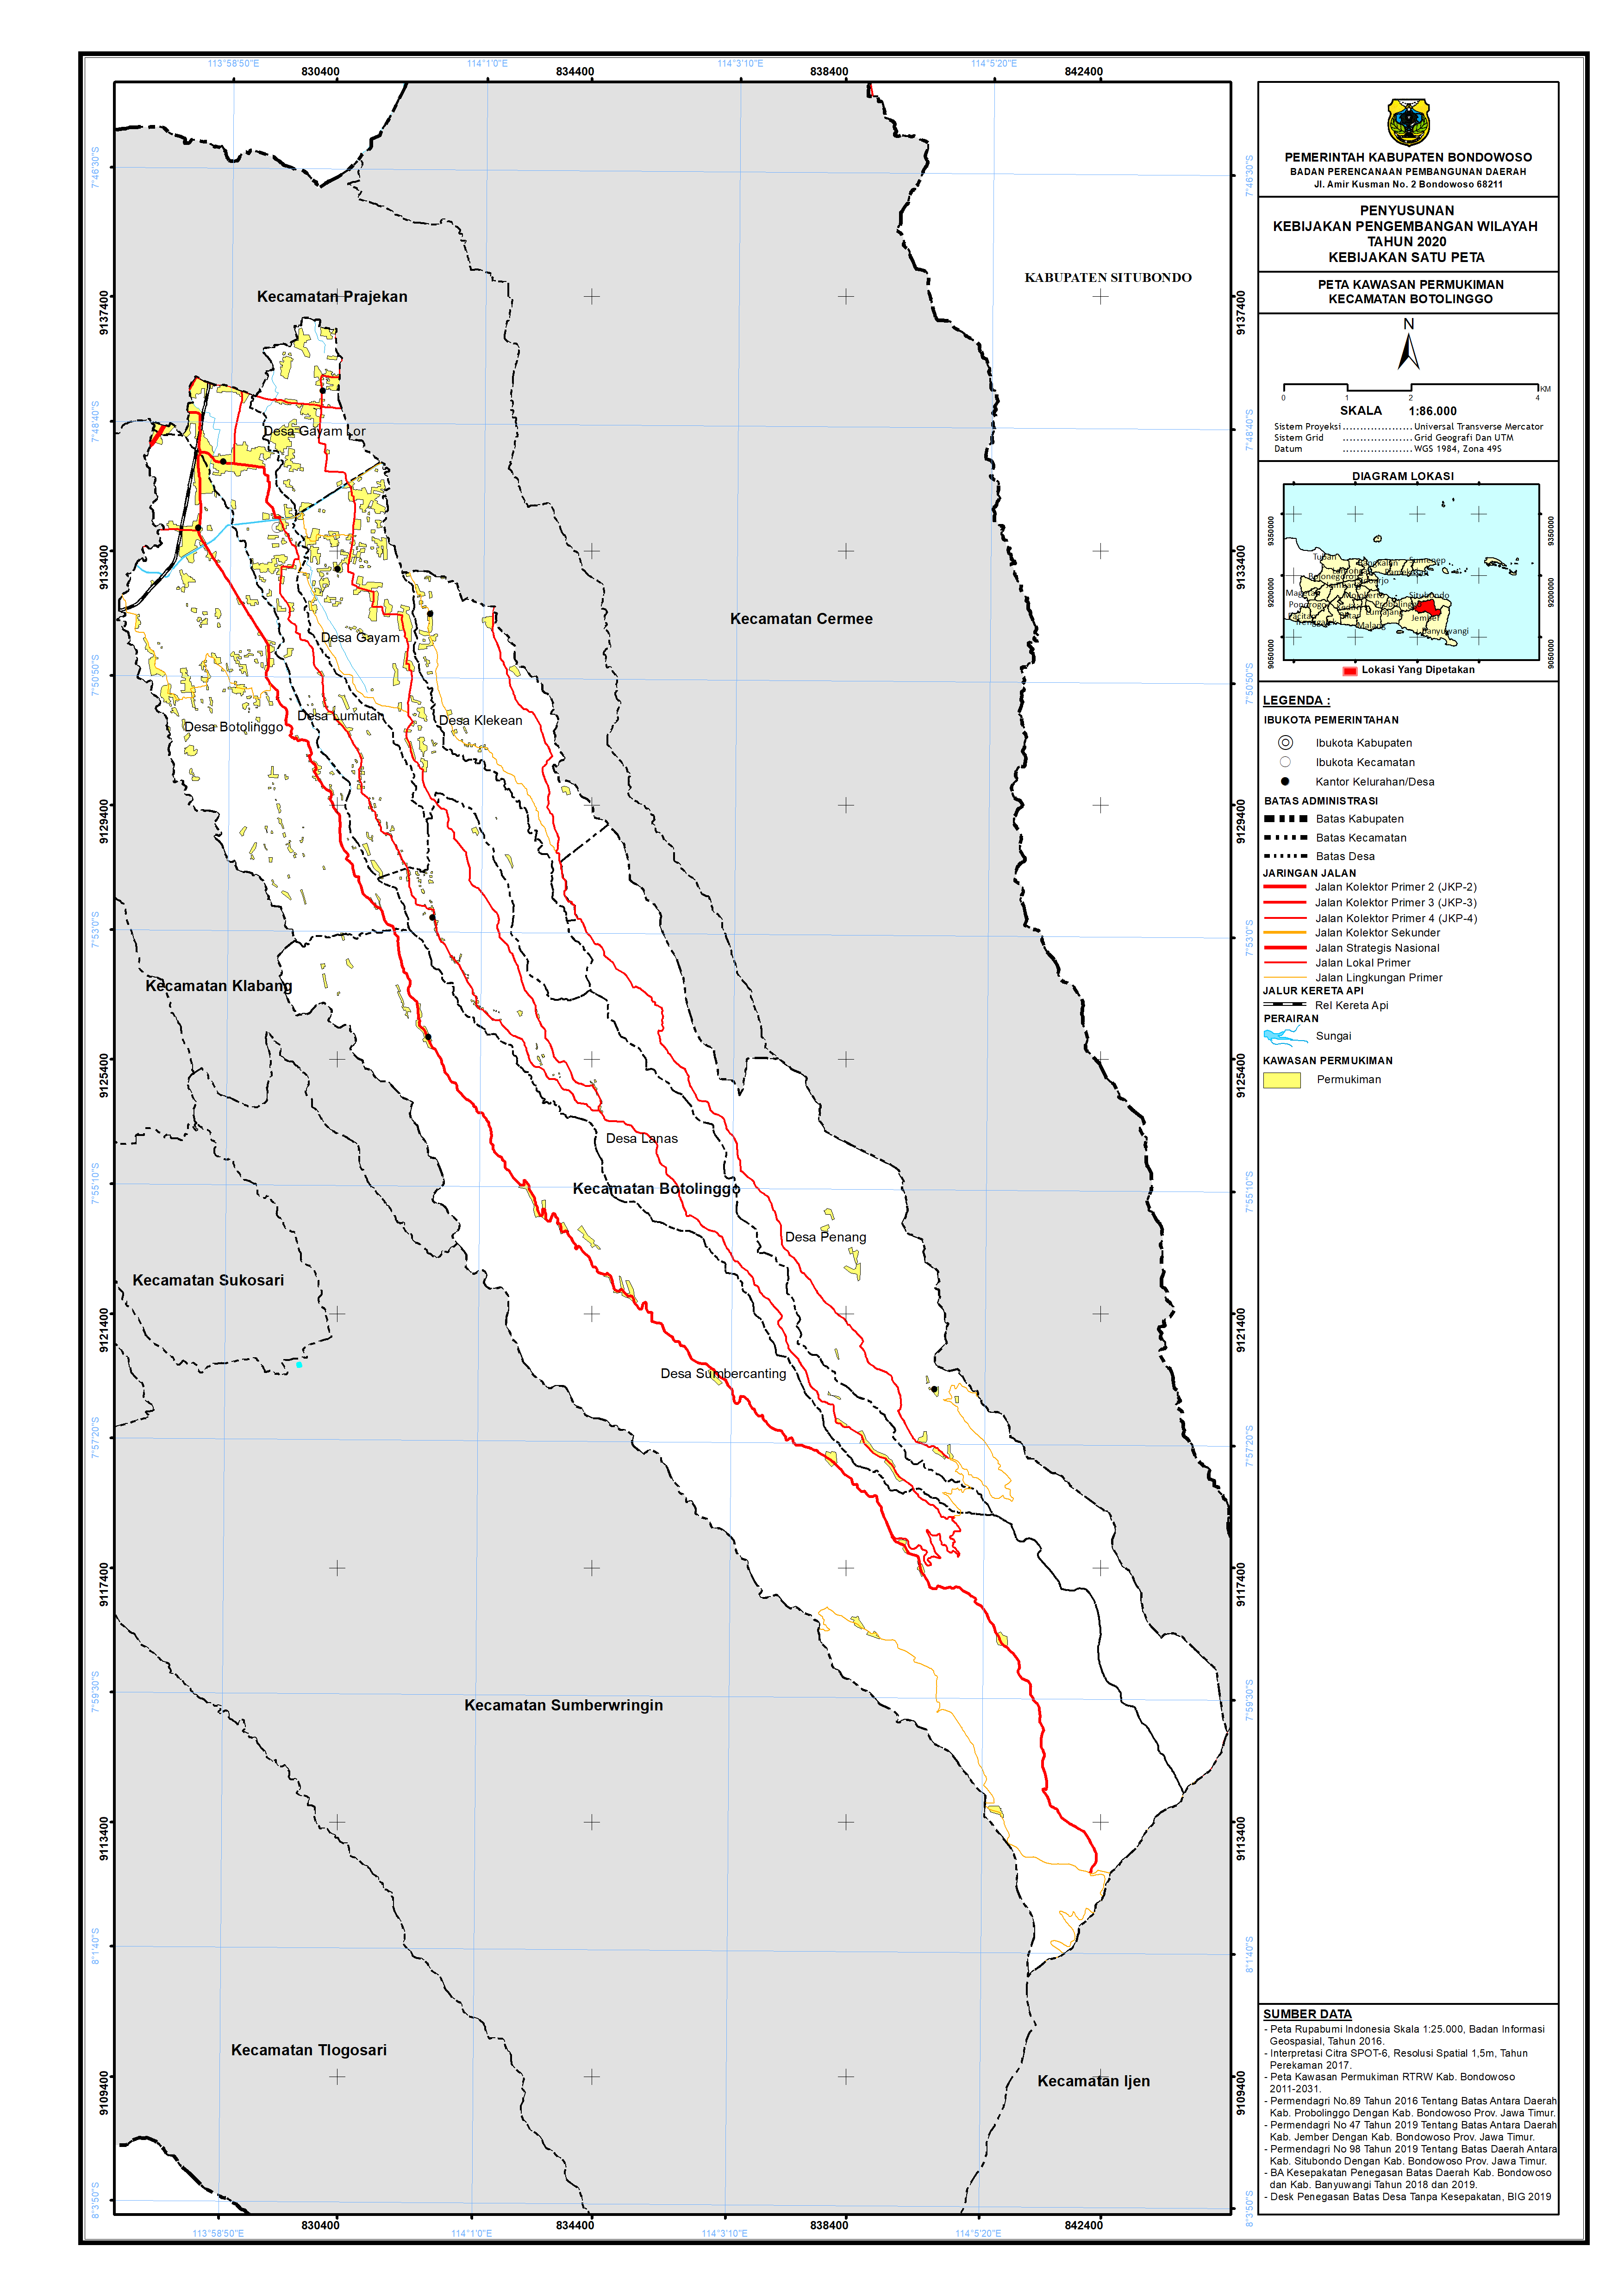 Peta Kawasan Permukiman Kecamatan Botolinggo.png